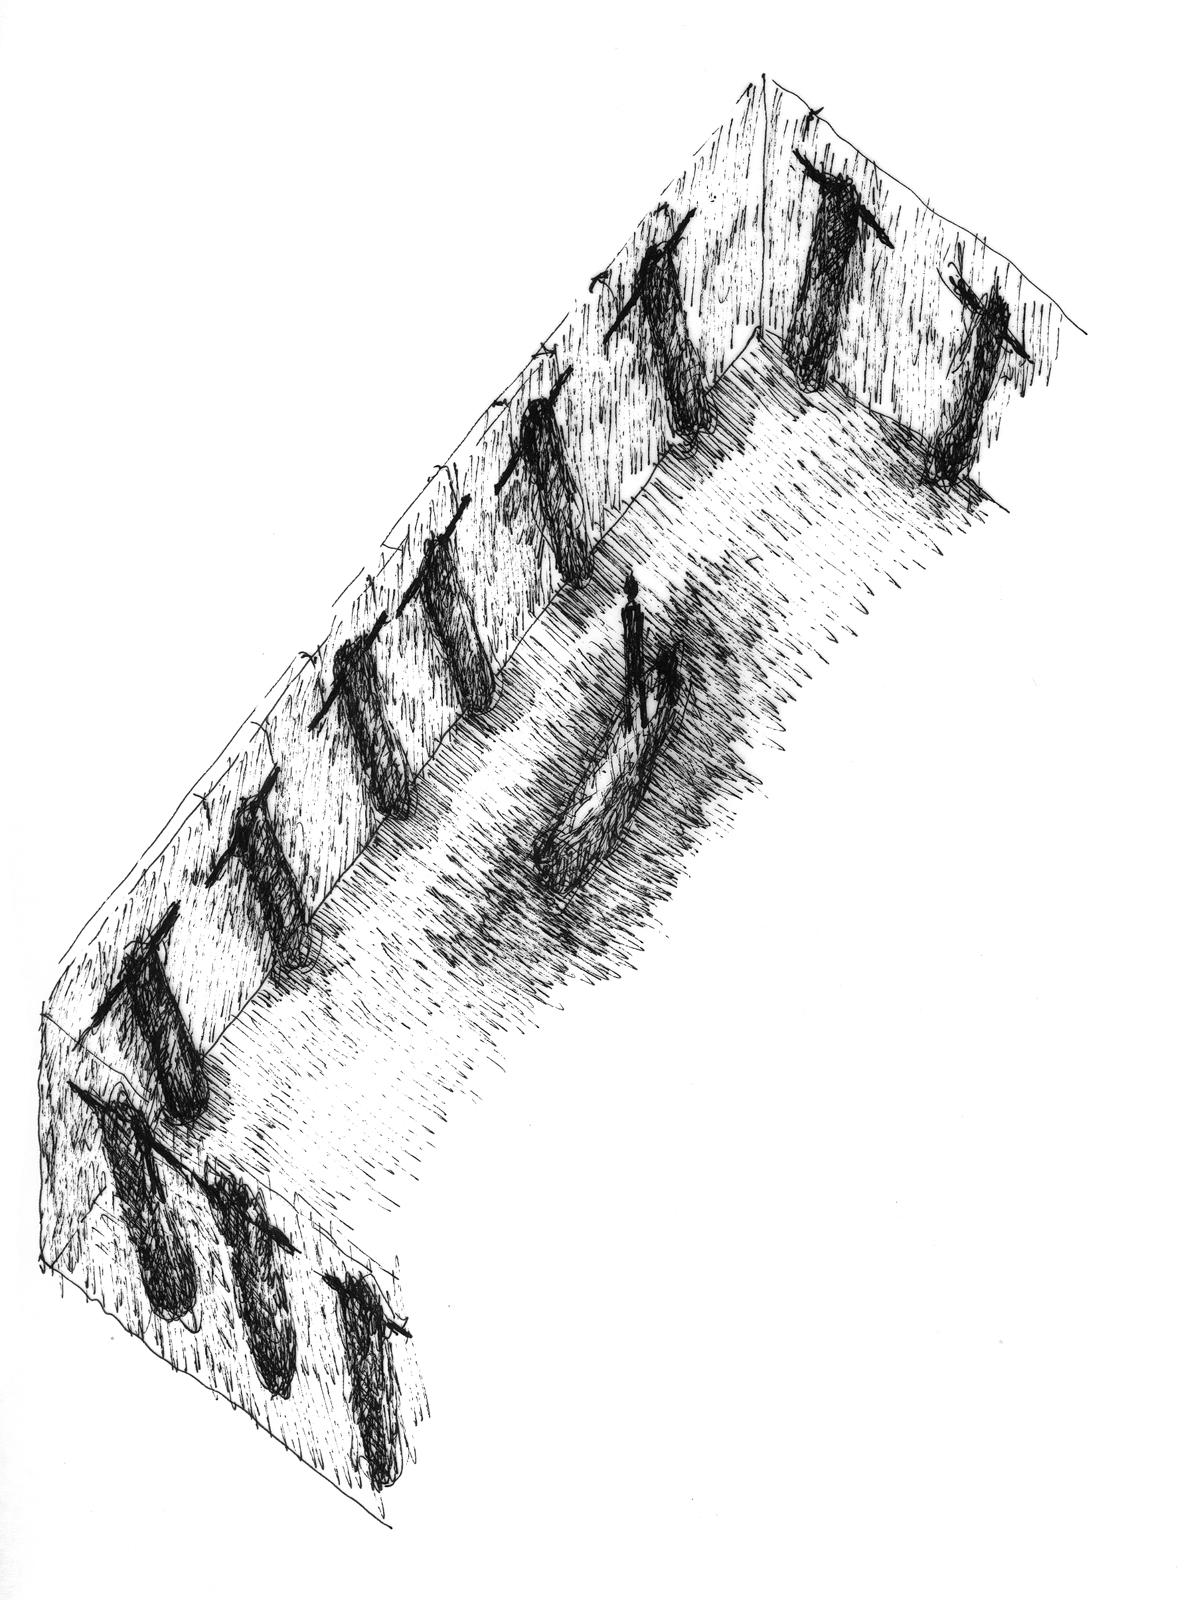 Dessin, rotring sur papier calque, 21 x 29,7 cm